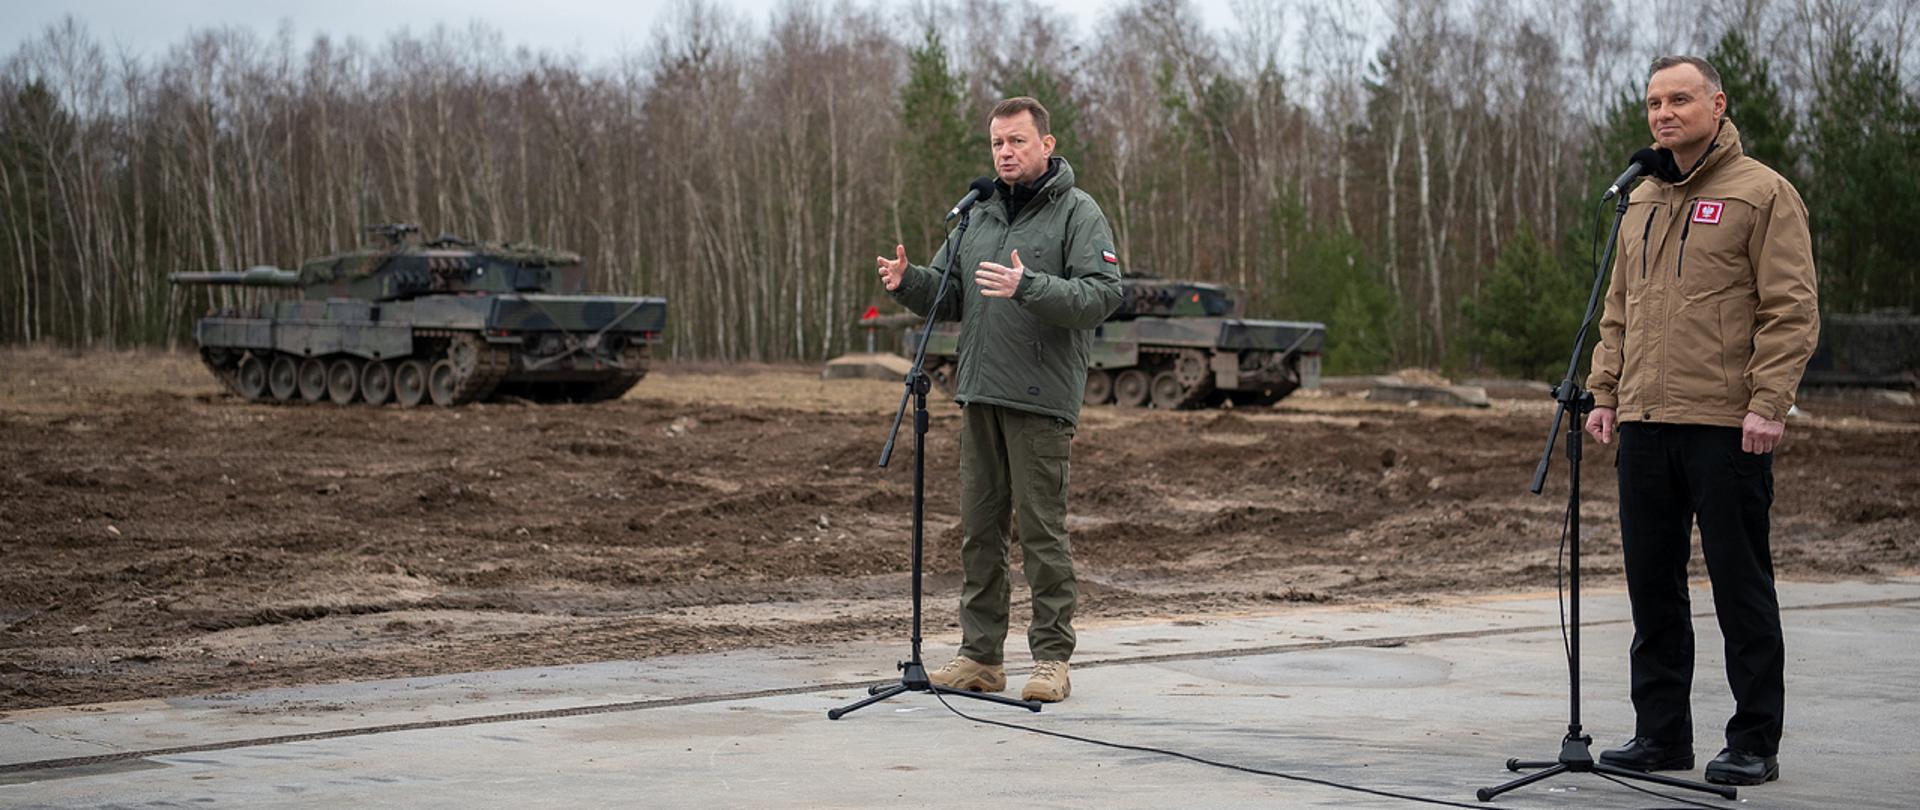 13 lutego 2023 r. w Świętoszowie, Zwierzchnik Sił Zbrojnych RP, prezydent Andrzej Duda i Mariusz Błaszczak, wicepremier-minister obrony narodowej spotkali się z instruktorami prowadzącymi szkolenie żołnierzy sił zbrojnych Ukrainy na czołgach Leopard.